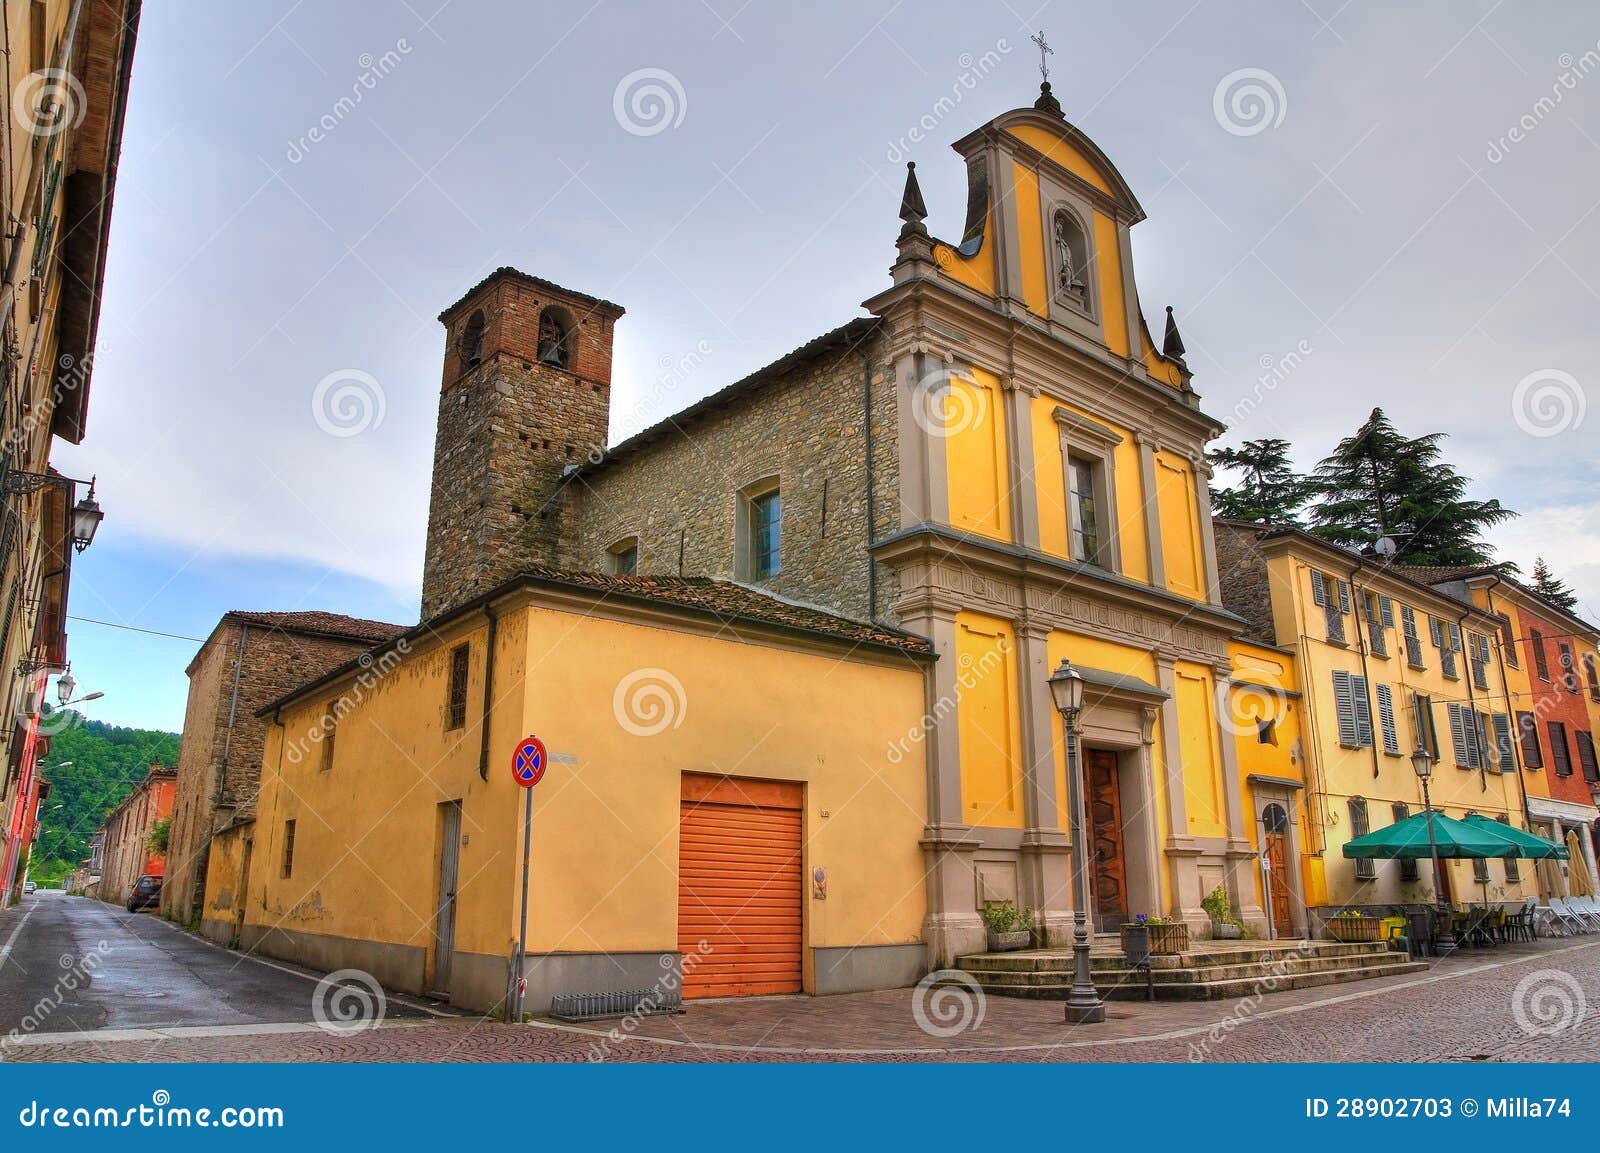 church of st. rocco. ponte dell'olio. emilia-romagna. italy.